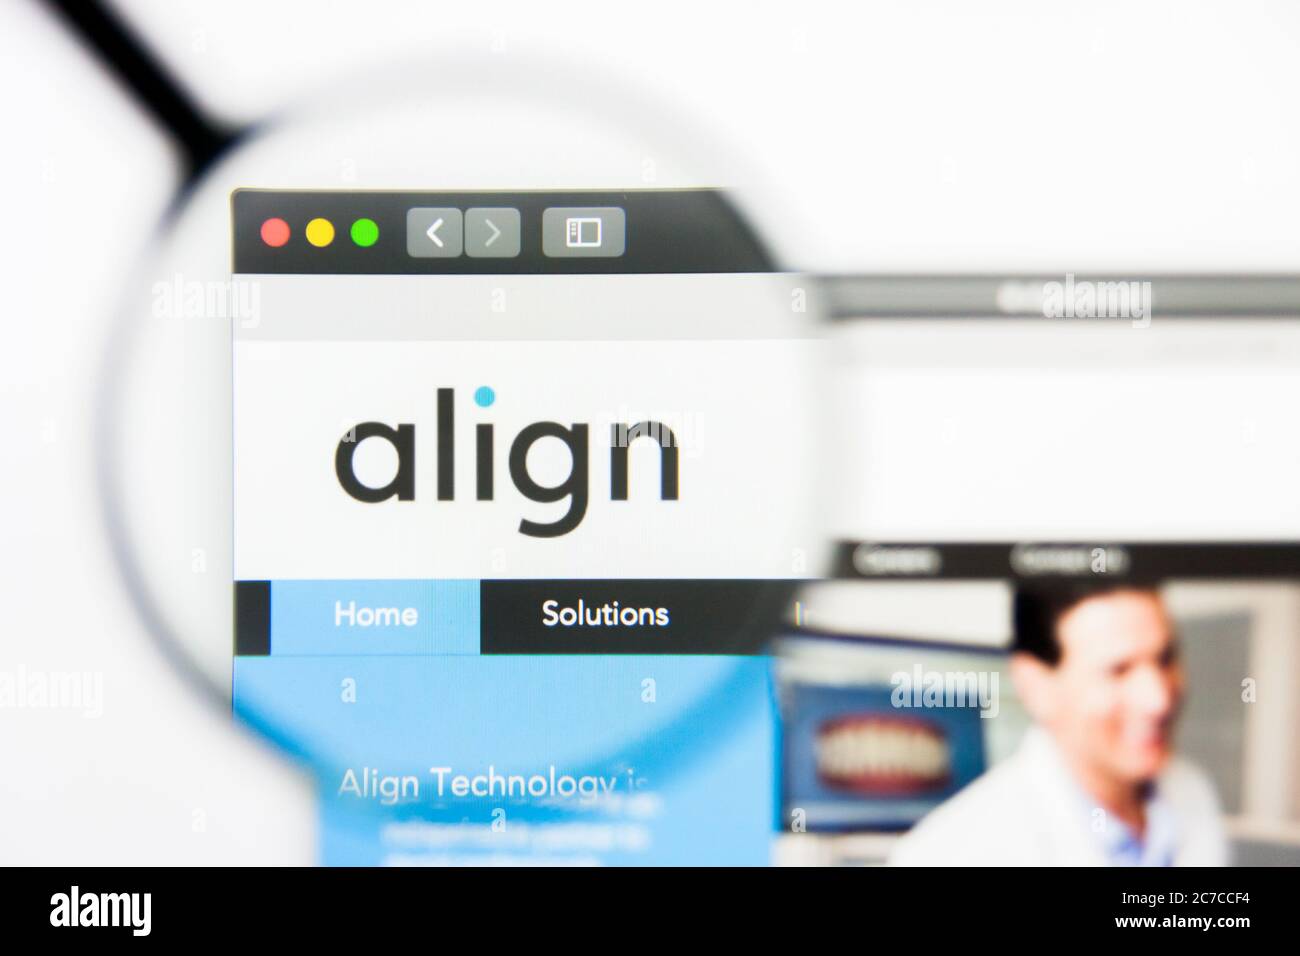 Los Angeles, California, USA - 24 Marzo 2019: Editoriale illustrativo della homepage del sito Align Technology. Logo Align Technology visibile sul display Foto Stock